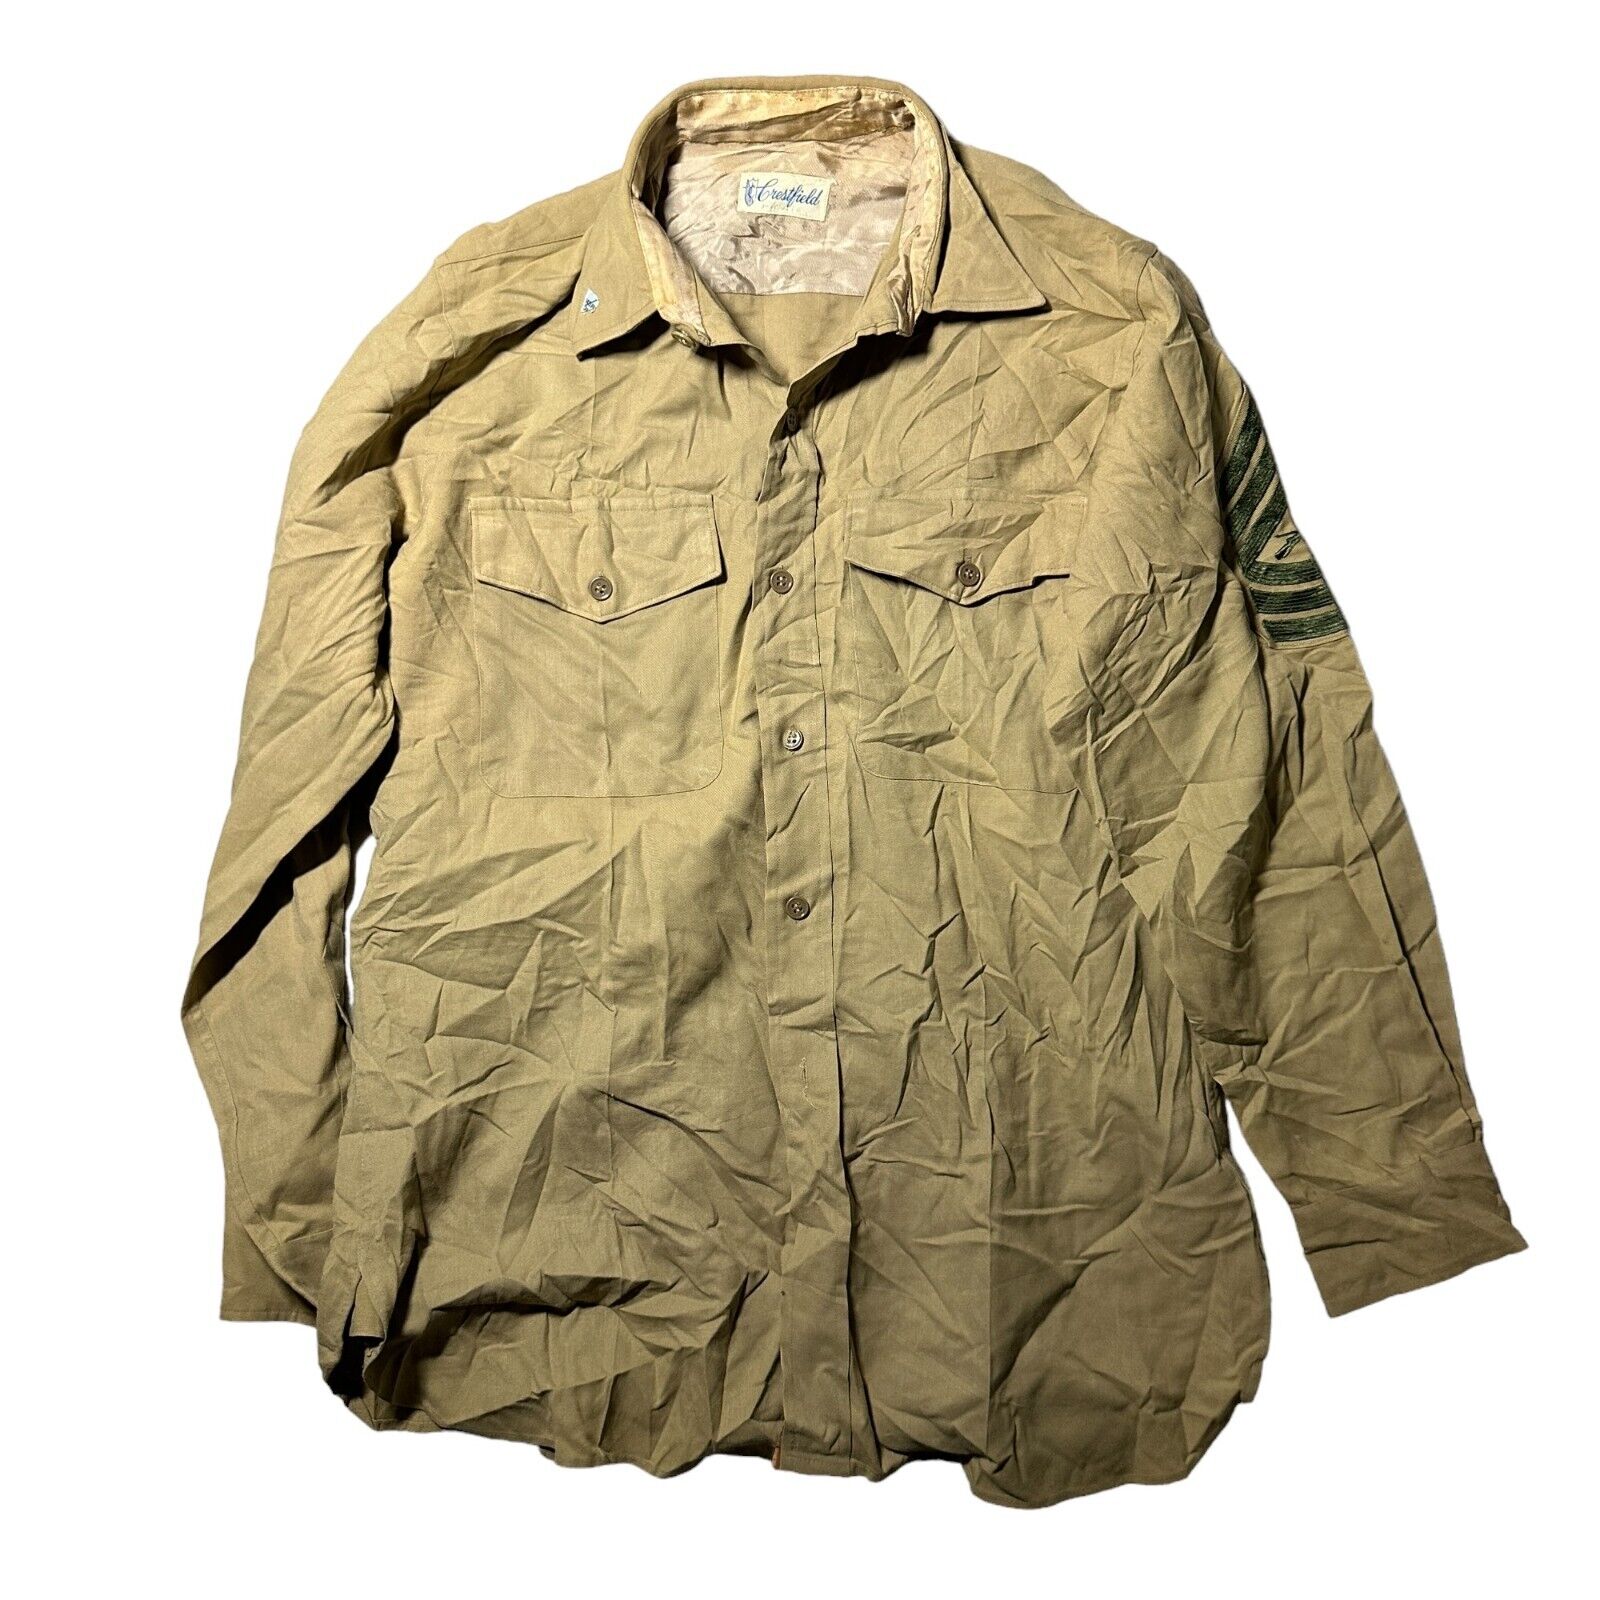 WW2 USMC Marine Corps Khaki Long Sleeve Shirt Size Medium